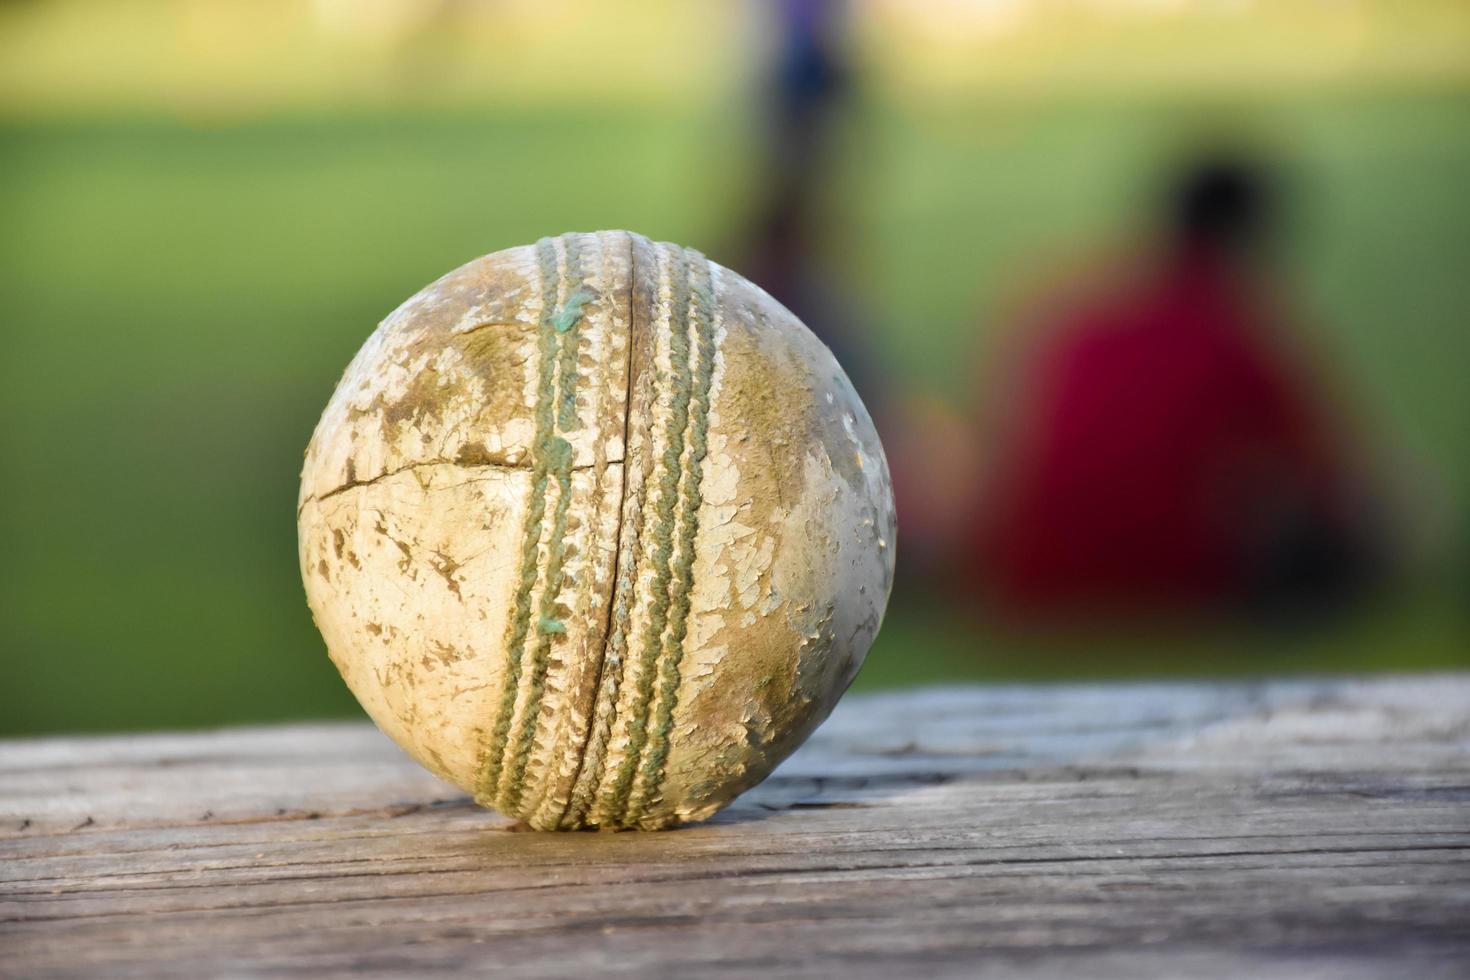 antiguos equipos deportivos de cricket de entrenamiento en suelo oscuro, pelota de cuero, wickets, casco y bate de madera, enfoque suave y selectivo, concepto tradicional de amantes del deporte de cricket en todo el mundo. foto